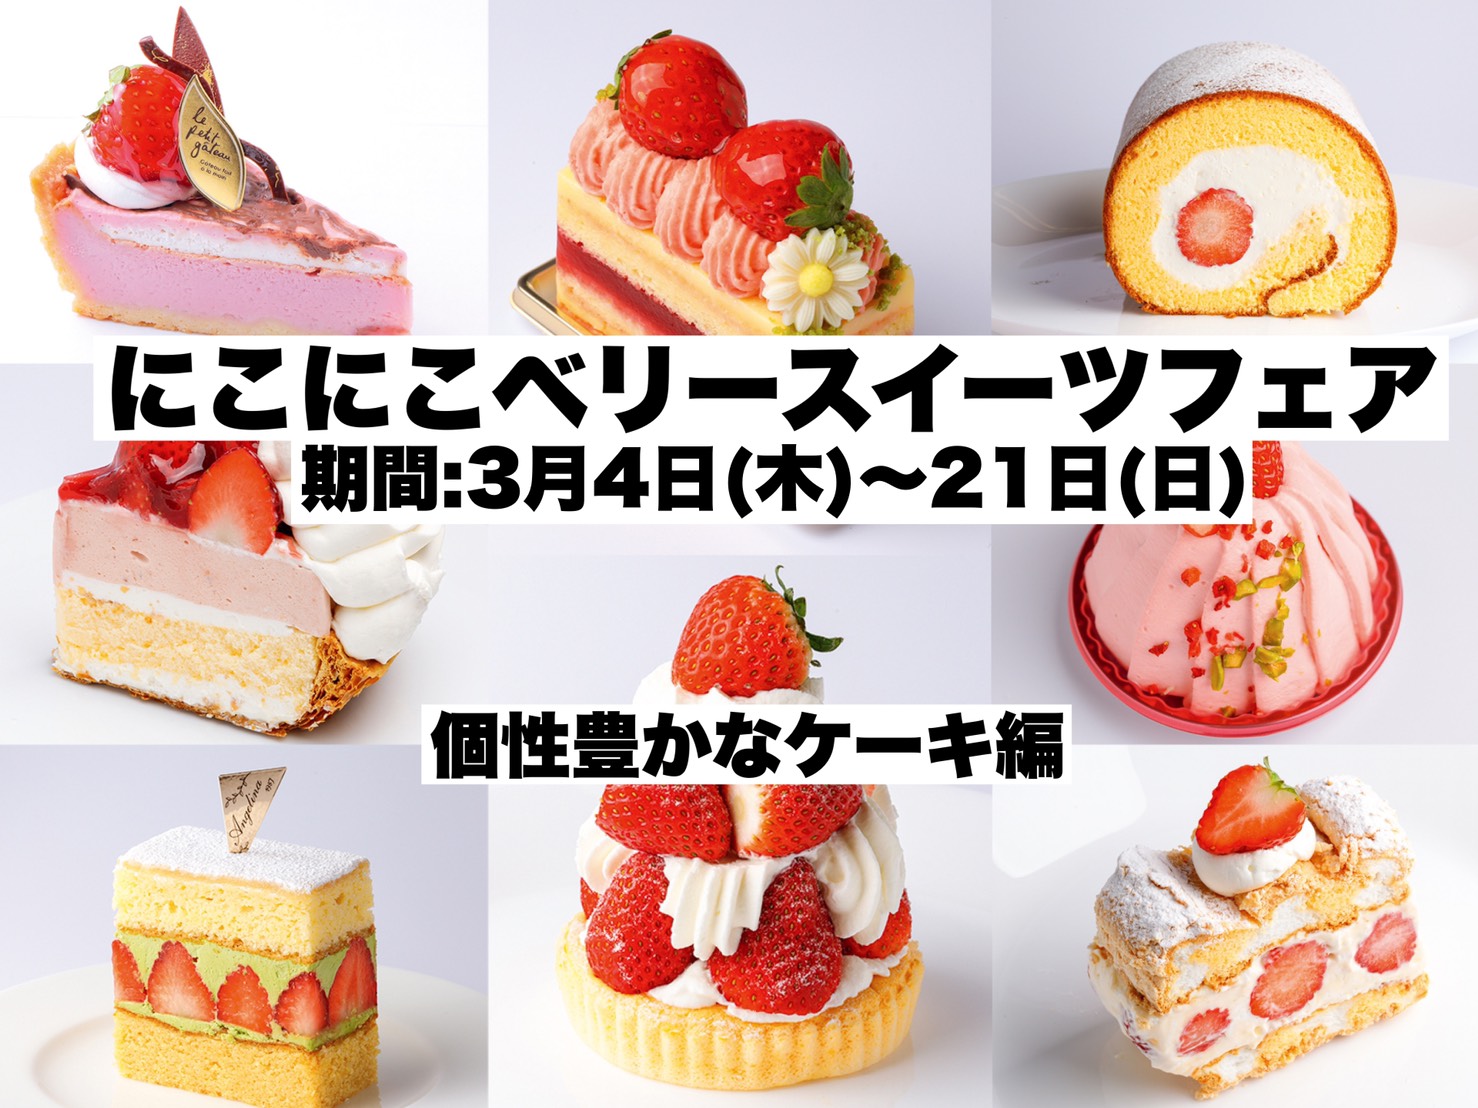 21年 宮城 仙台の最新イチゴ案内 個性豊かなイチゴケーキが勢ぞろい 日刊せんだいタウン情報s Style Web